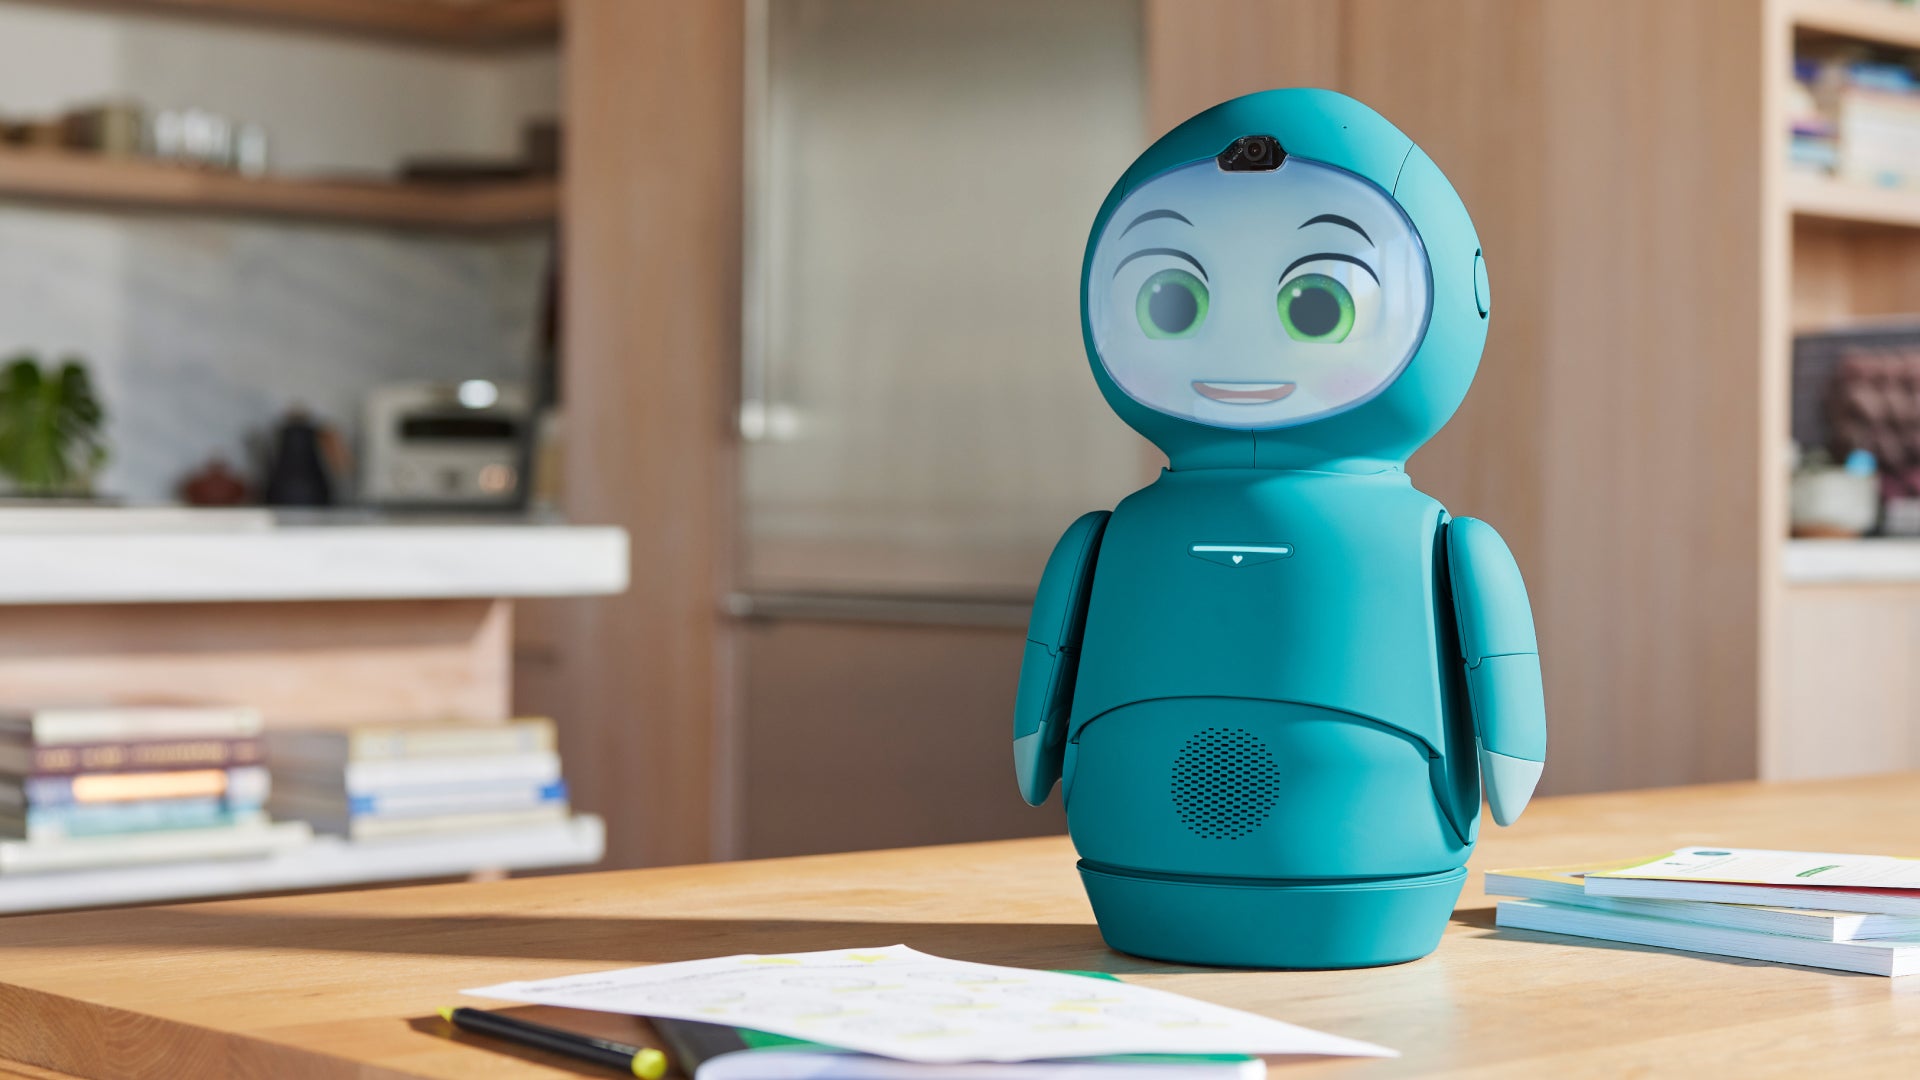 Meet Moxie, a robot friend designed for children